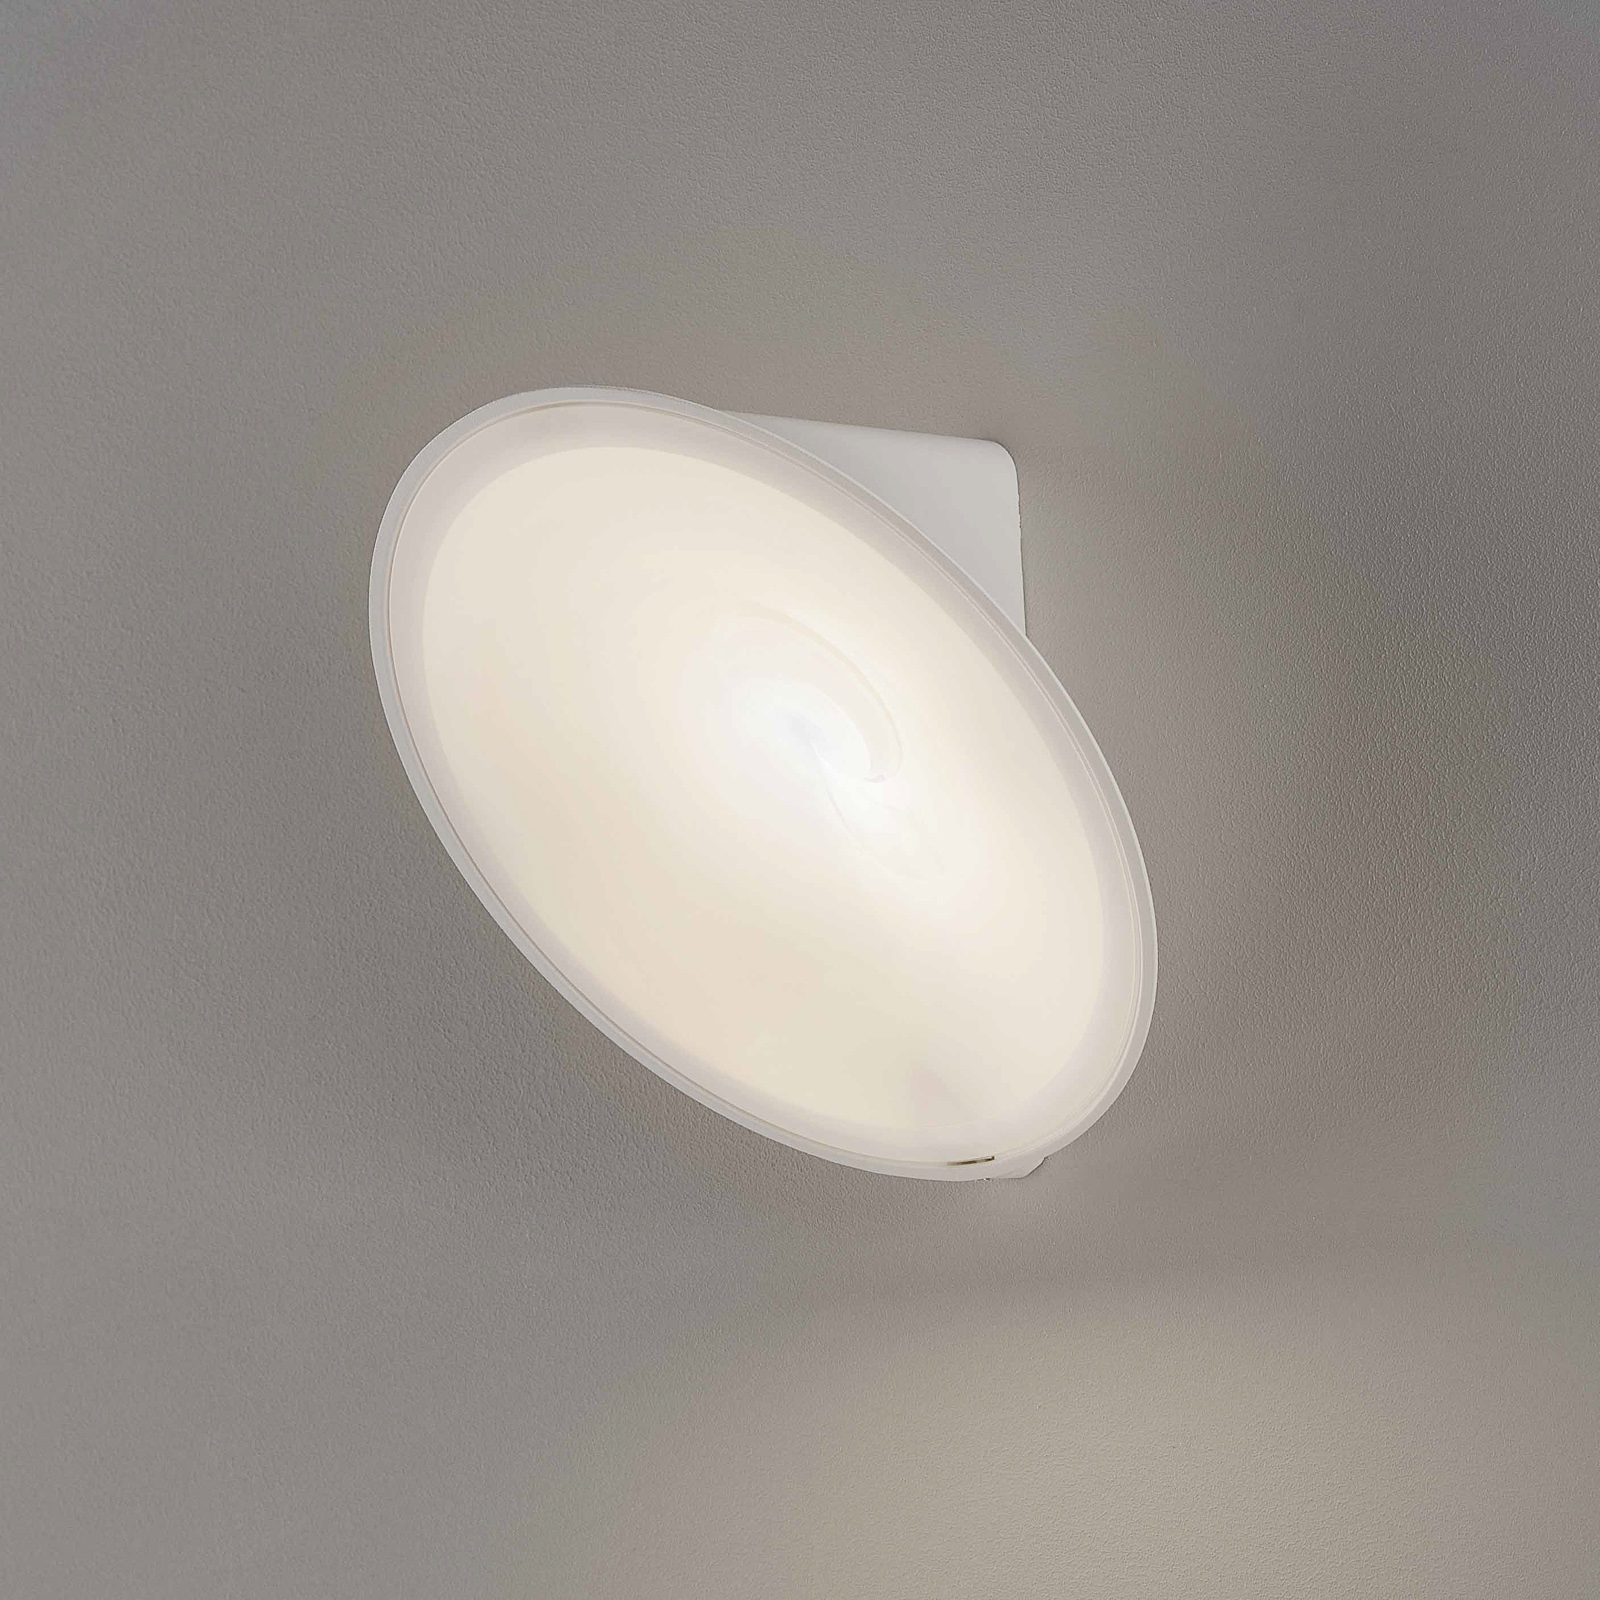 Axolight Orchid LED fali lámpa, fehér színben